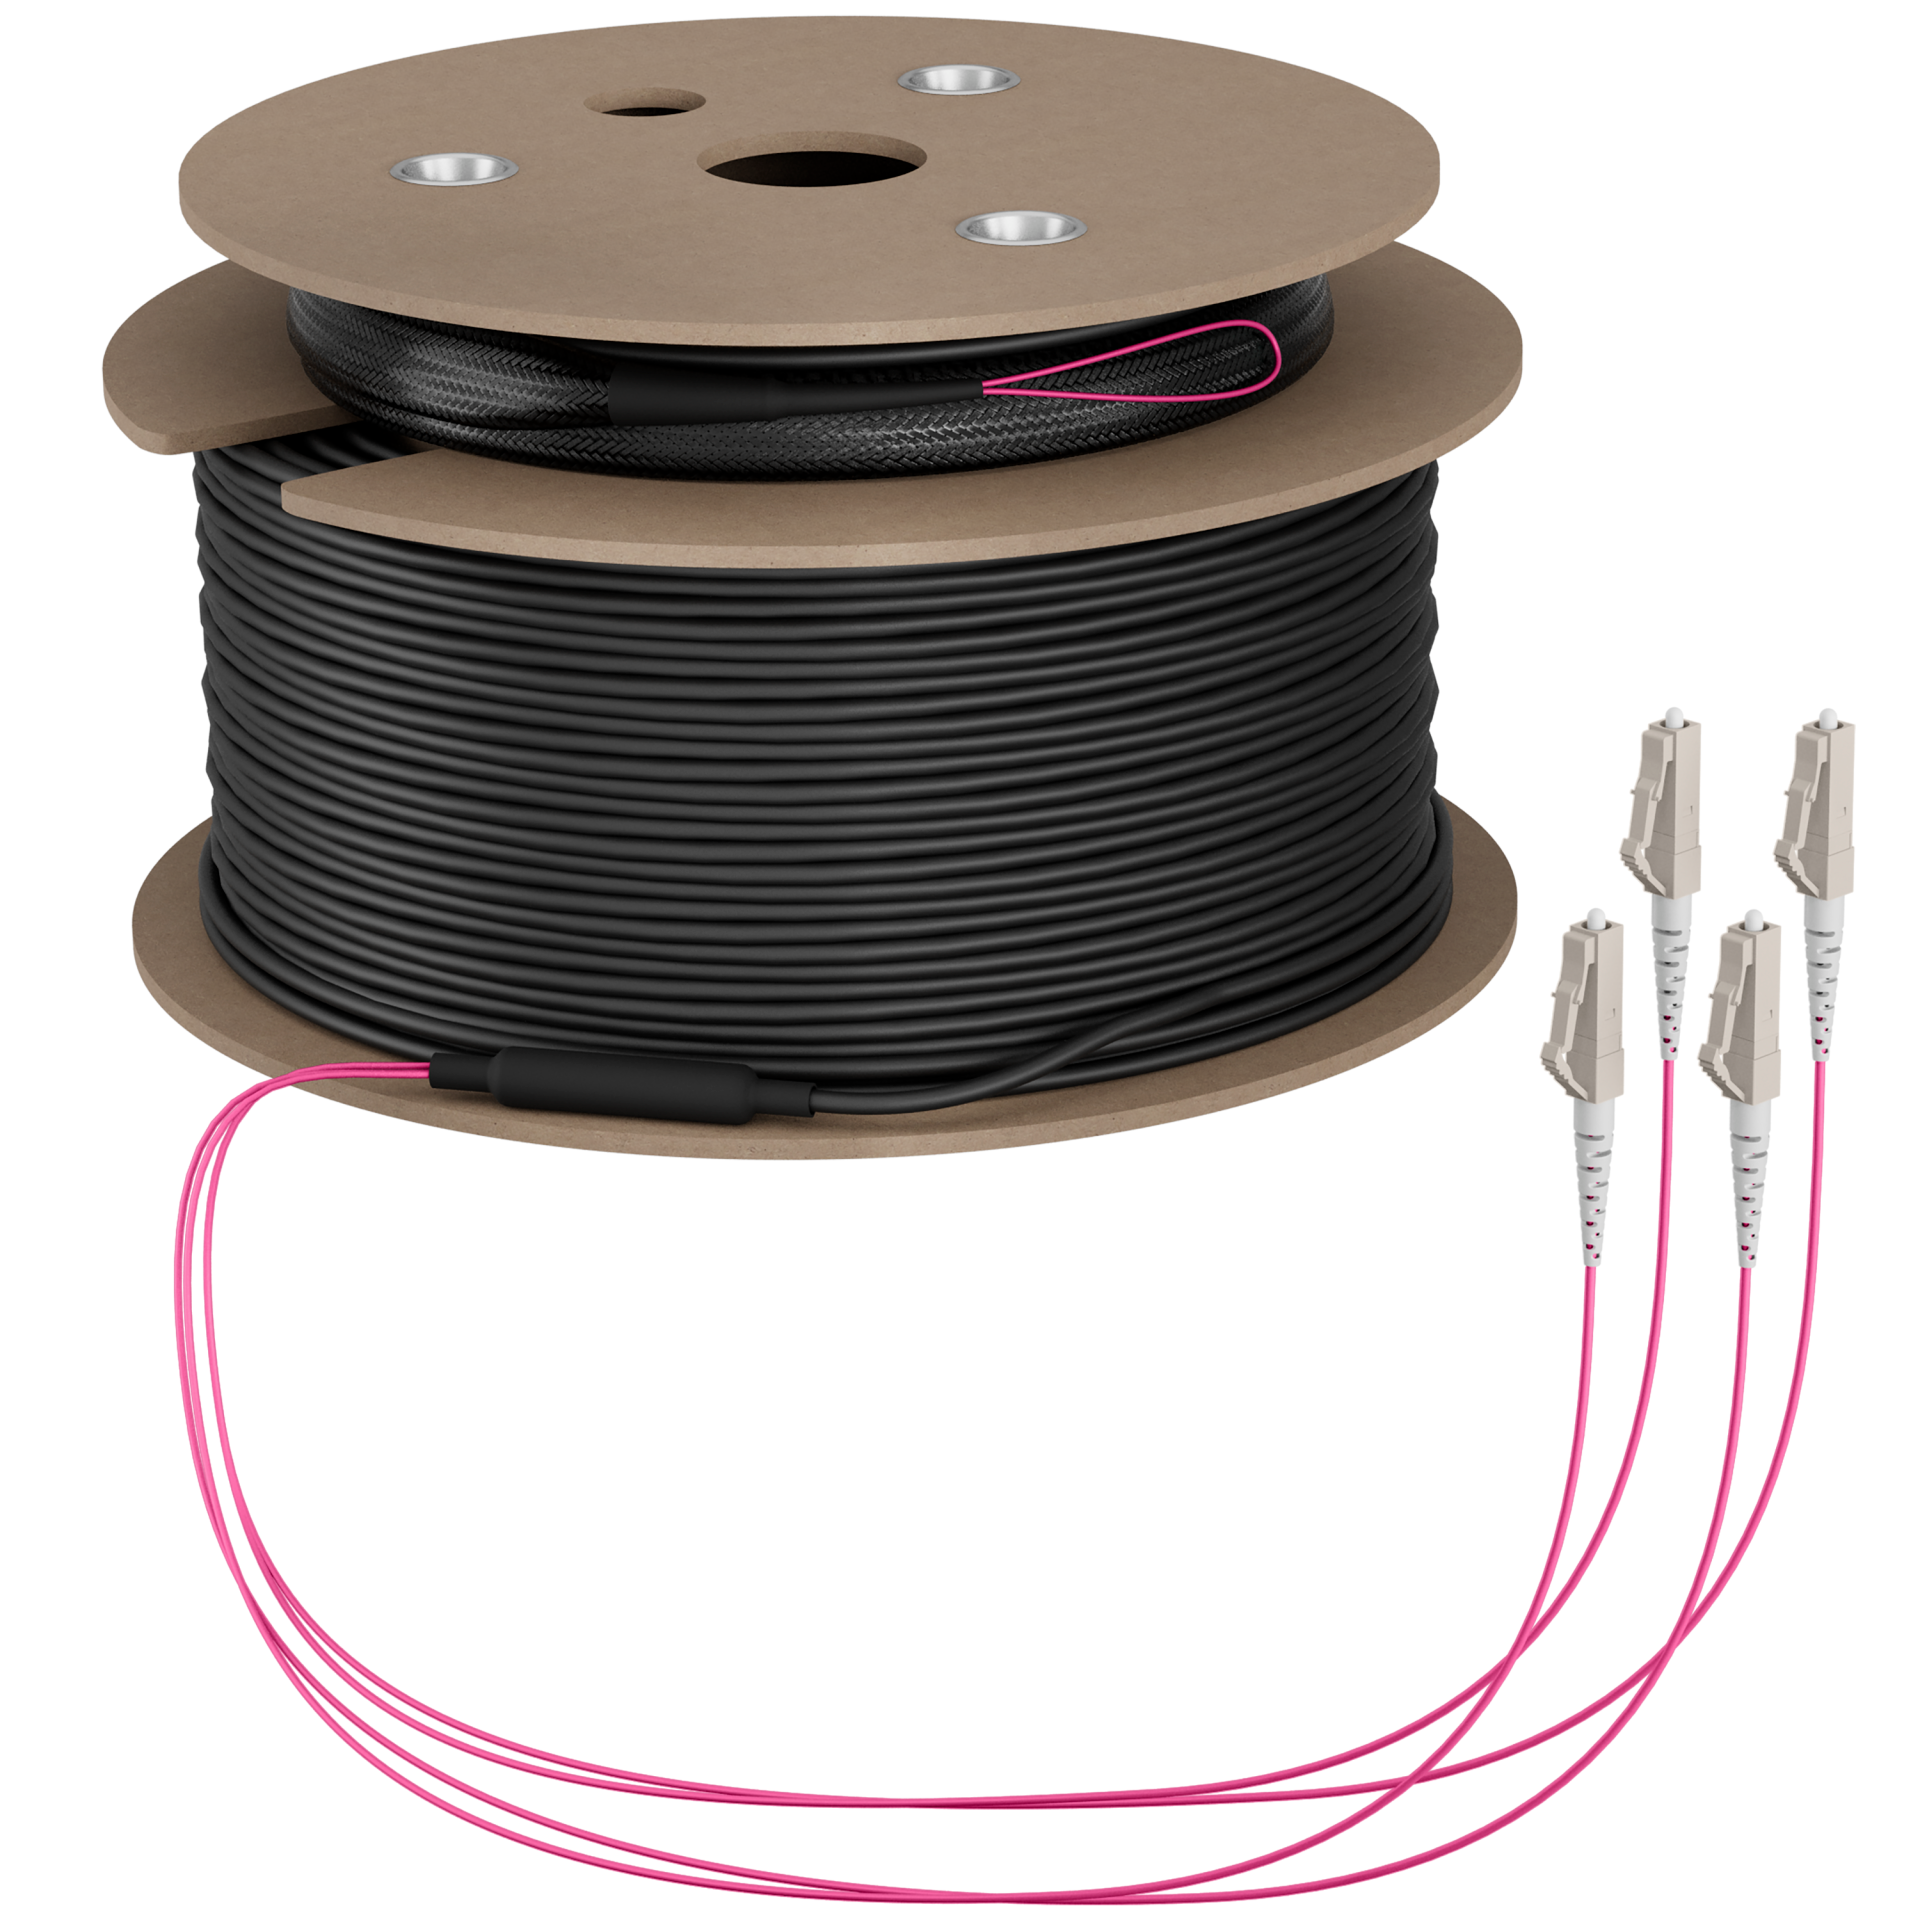 Trunk cable U-DQ(ZN)BH OM4 4G (1x4) LC-LC,150m Dca LSZH